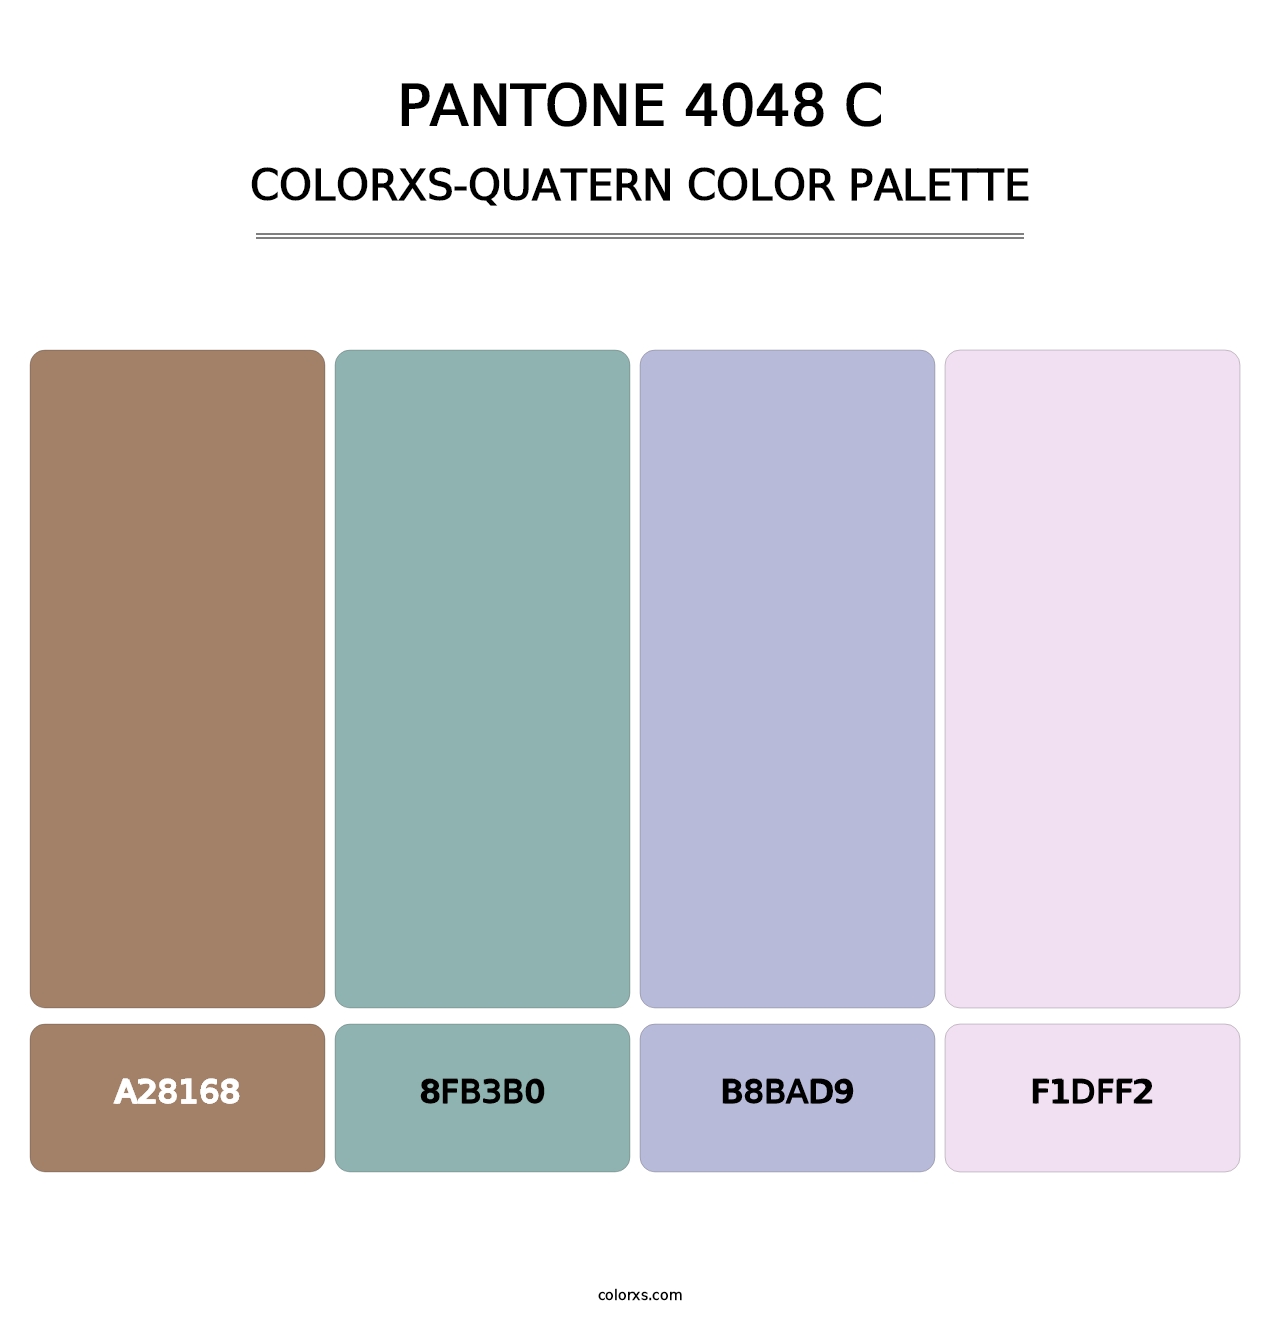 PANTONE 4048 C - Colorxs Quatern Palette